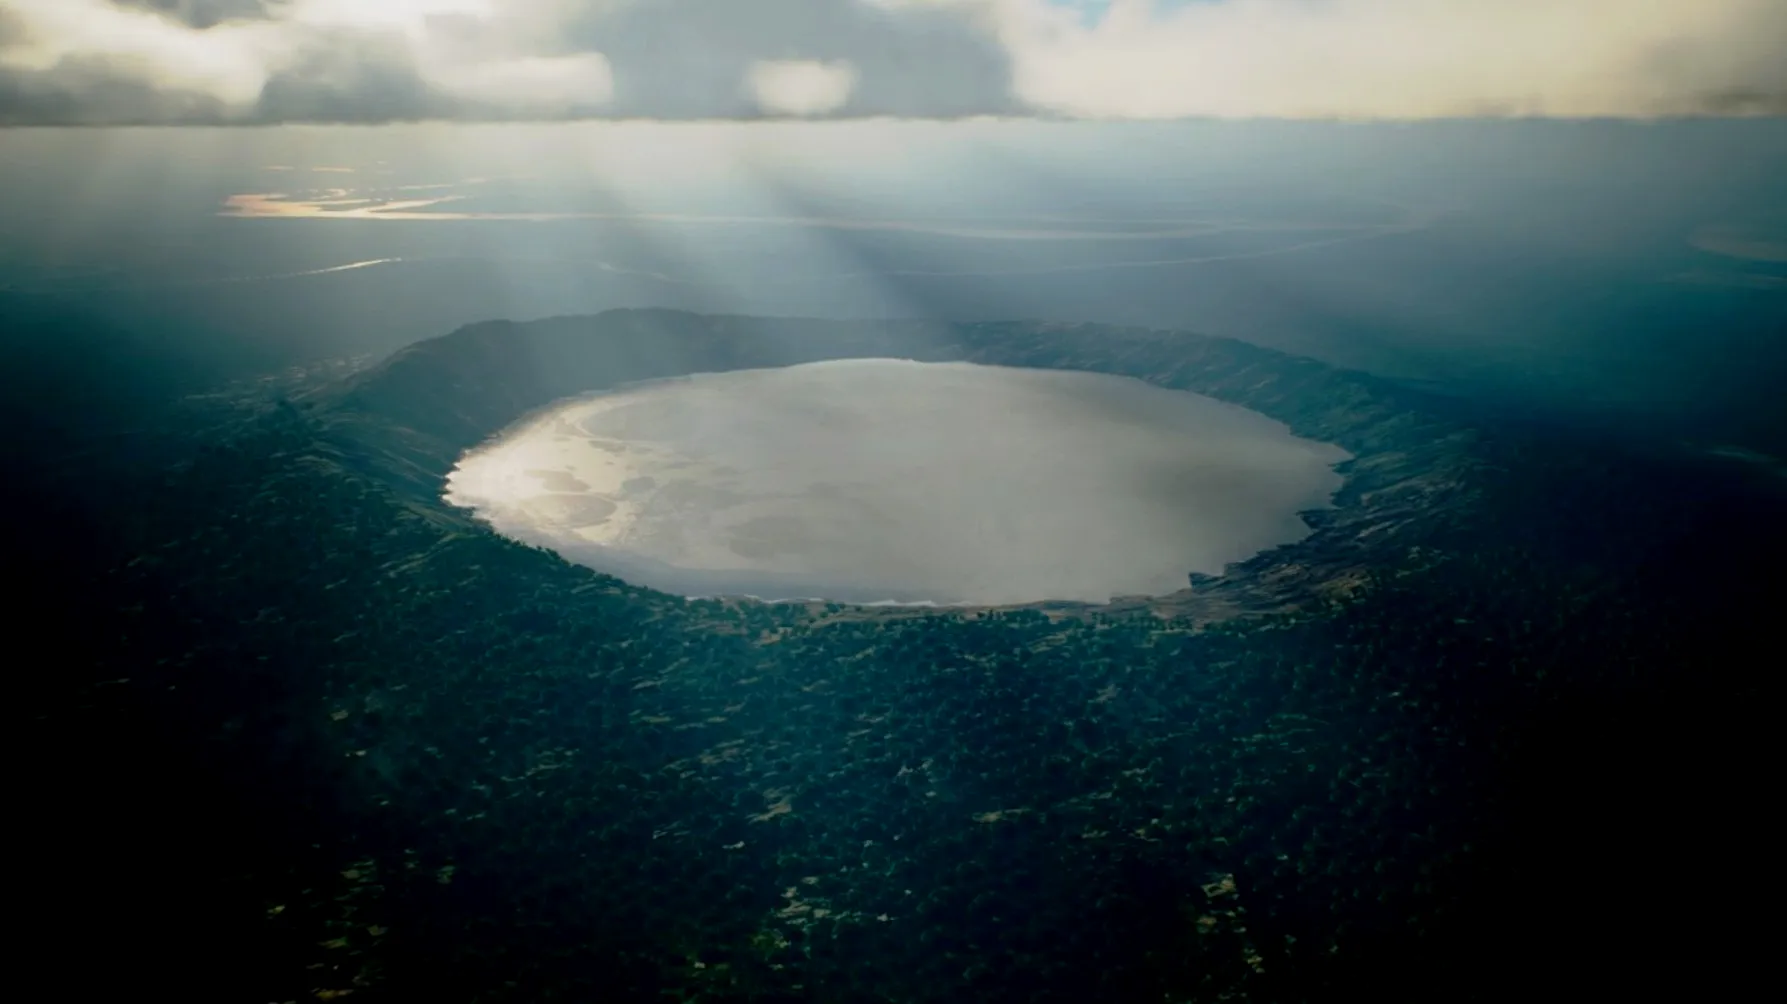 位于肖宾堡(Chopinburg)雨林的无名陨石坑，科学家预计该陨石坑形成的湖泊在未来仍然会是全世界最大的陨石坑湖